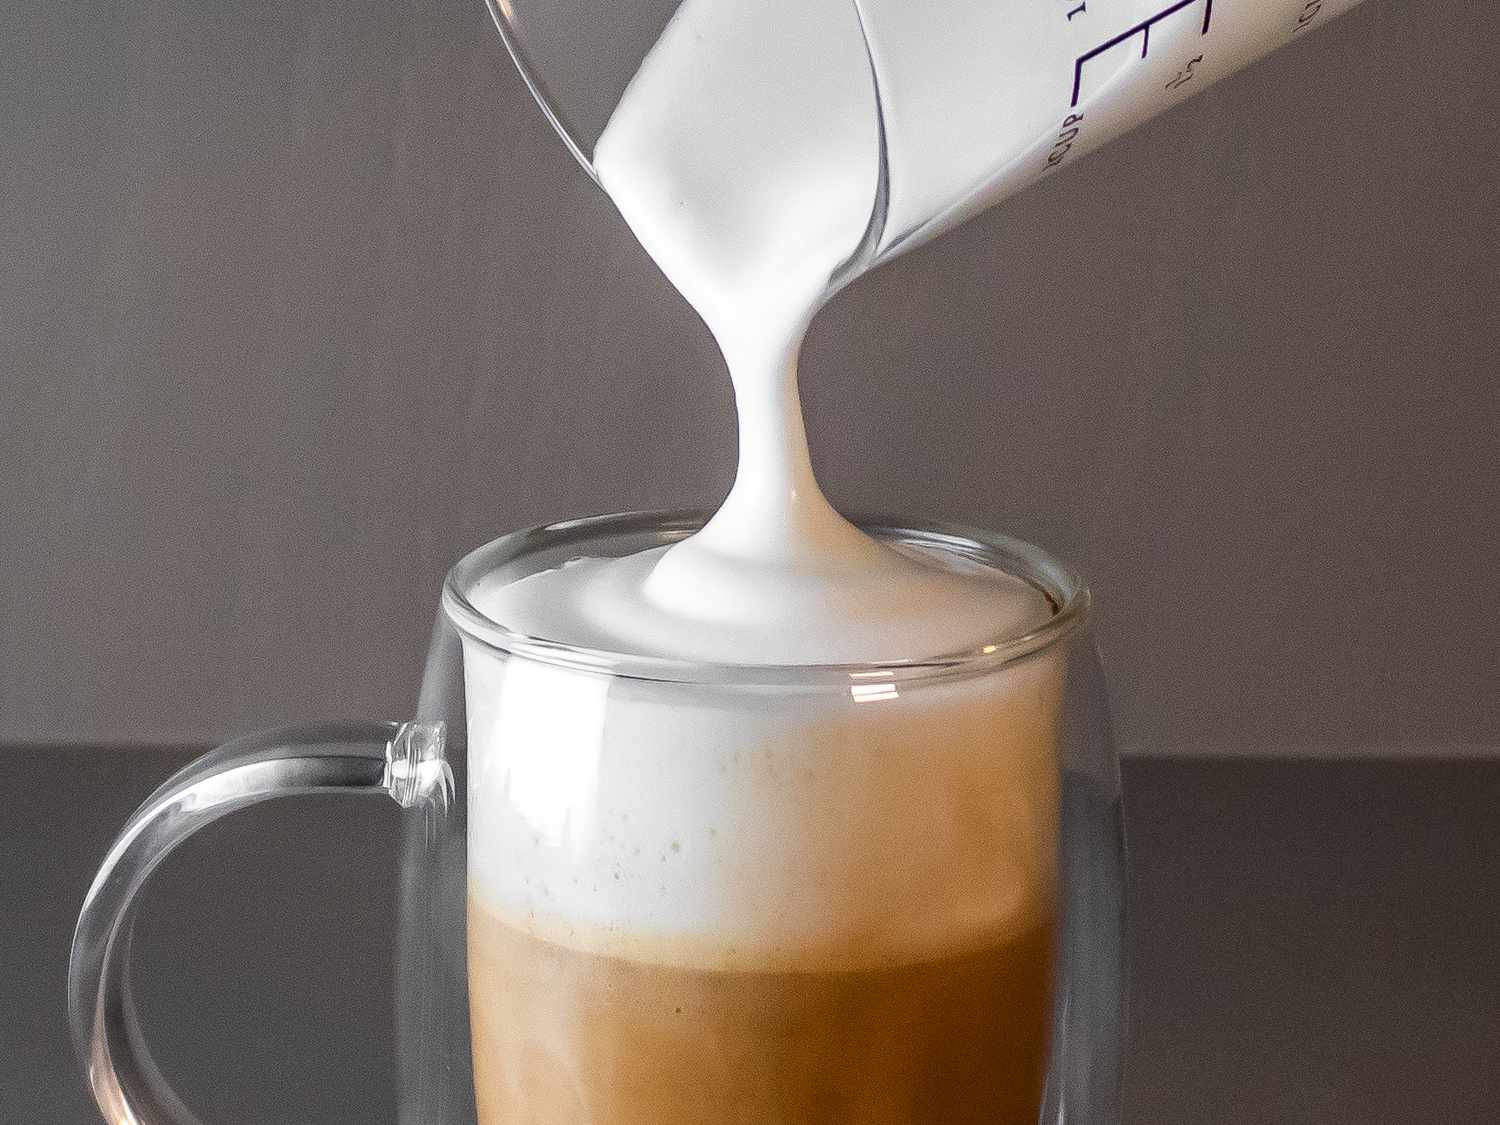 牛奶泡沫被倒进咖啡杯的特写镜头